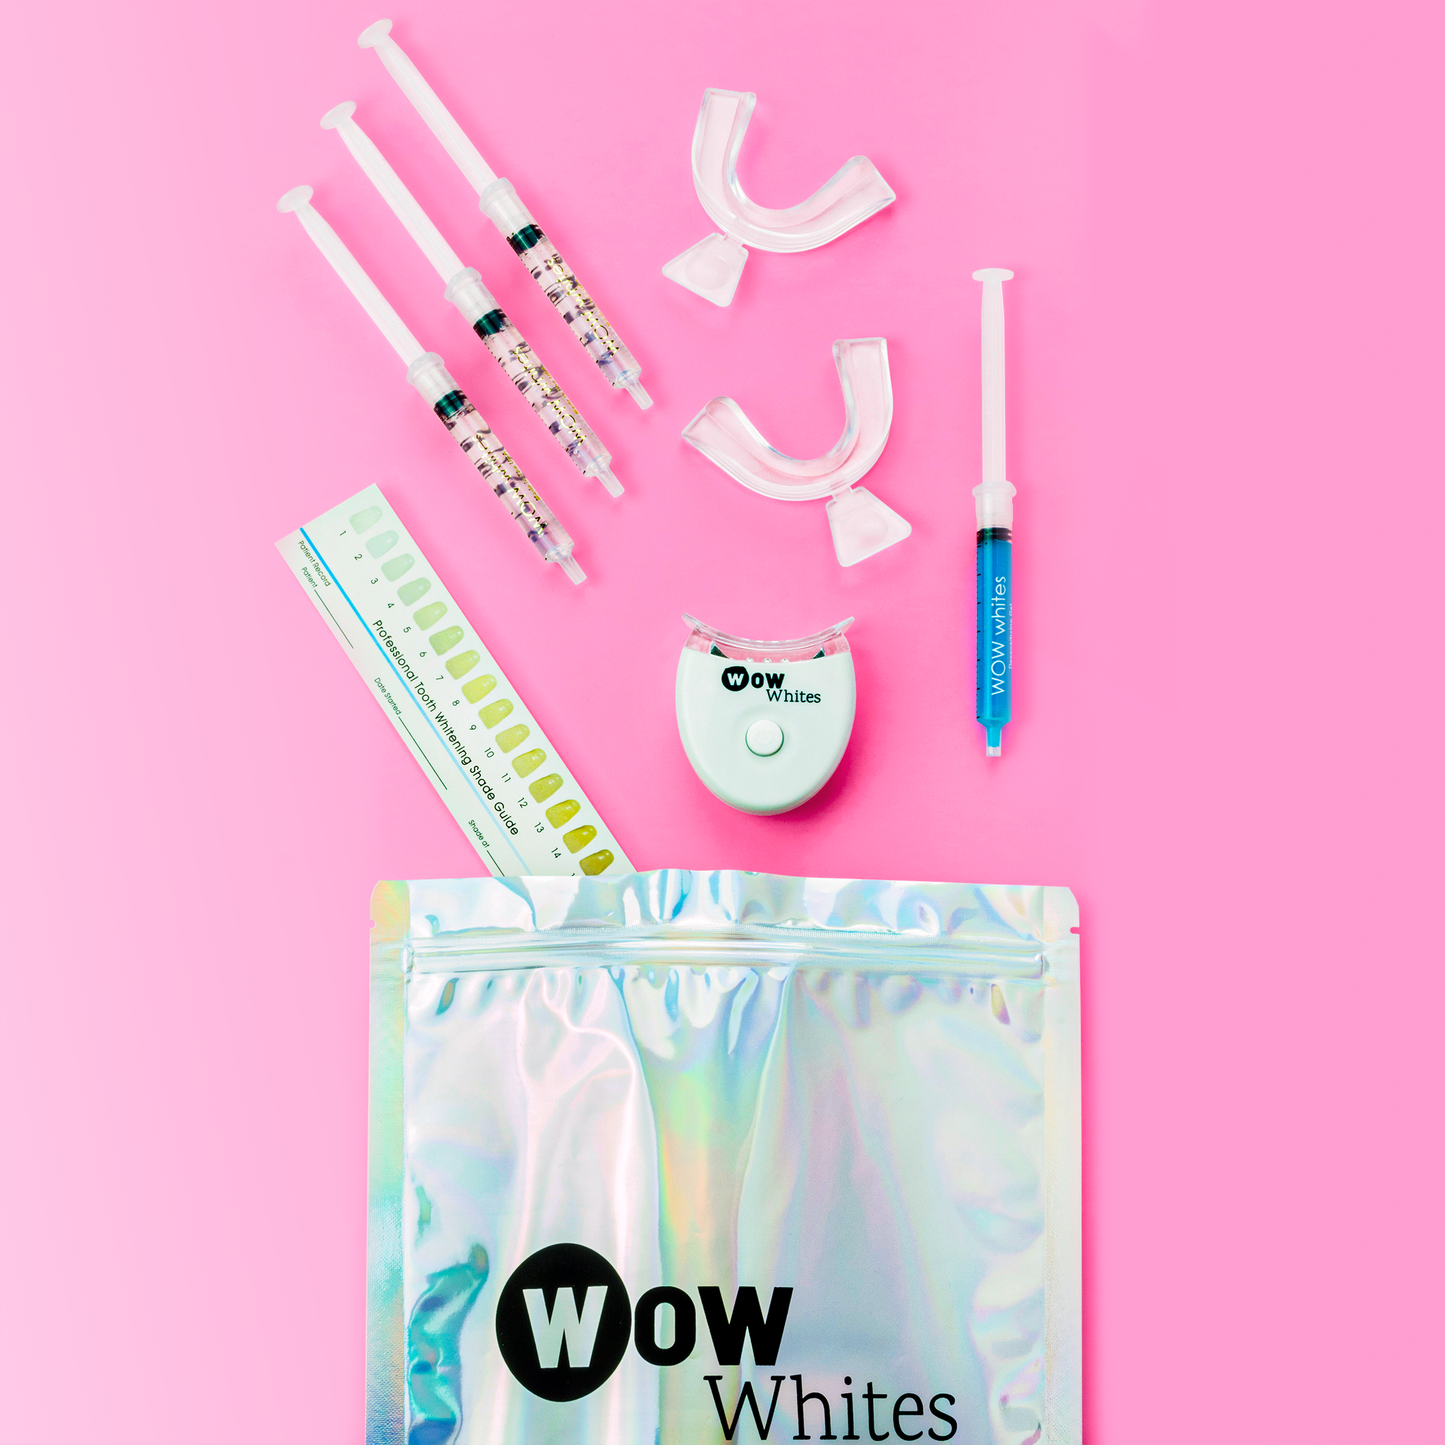 The WOW whites kit